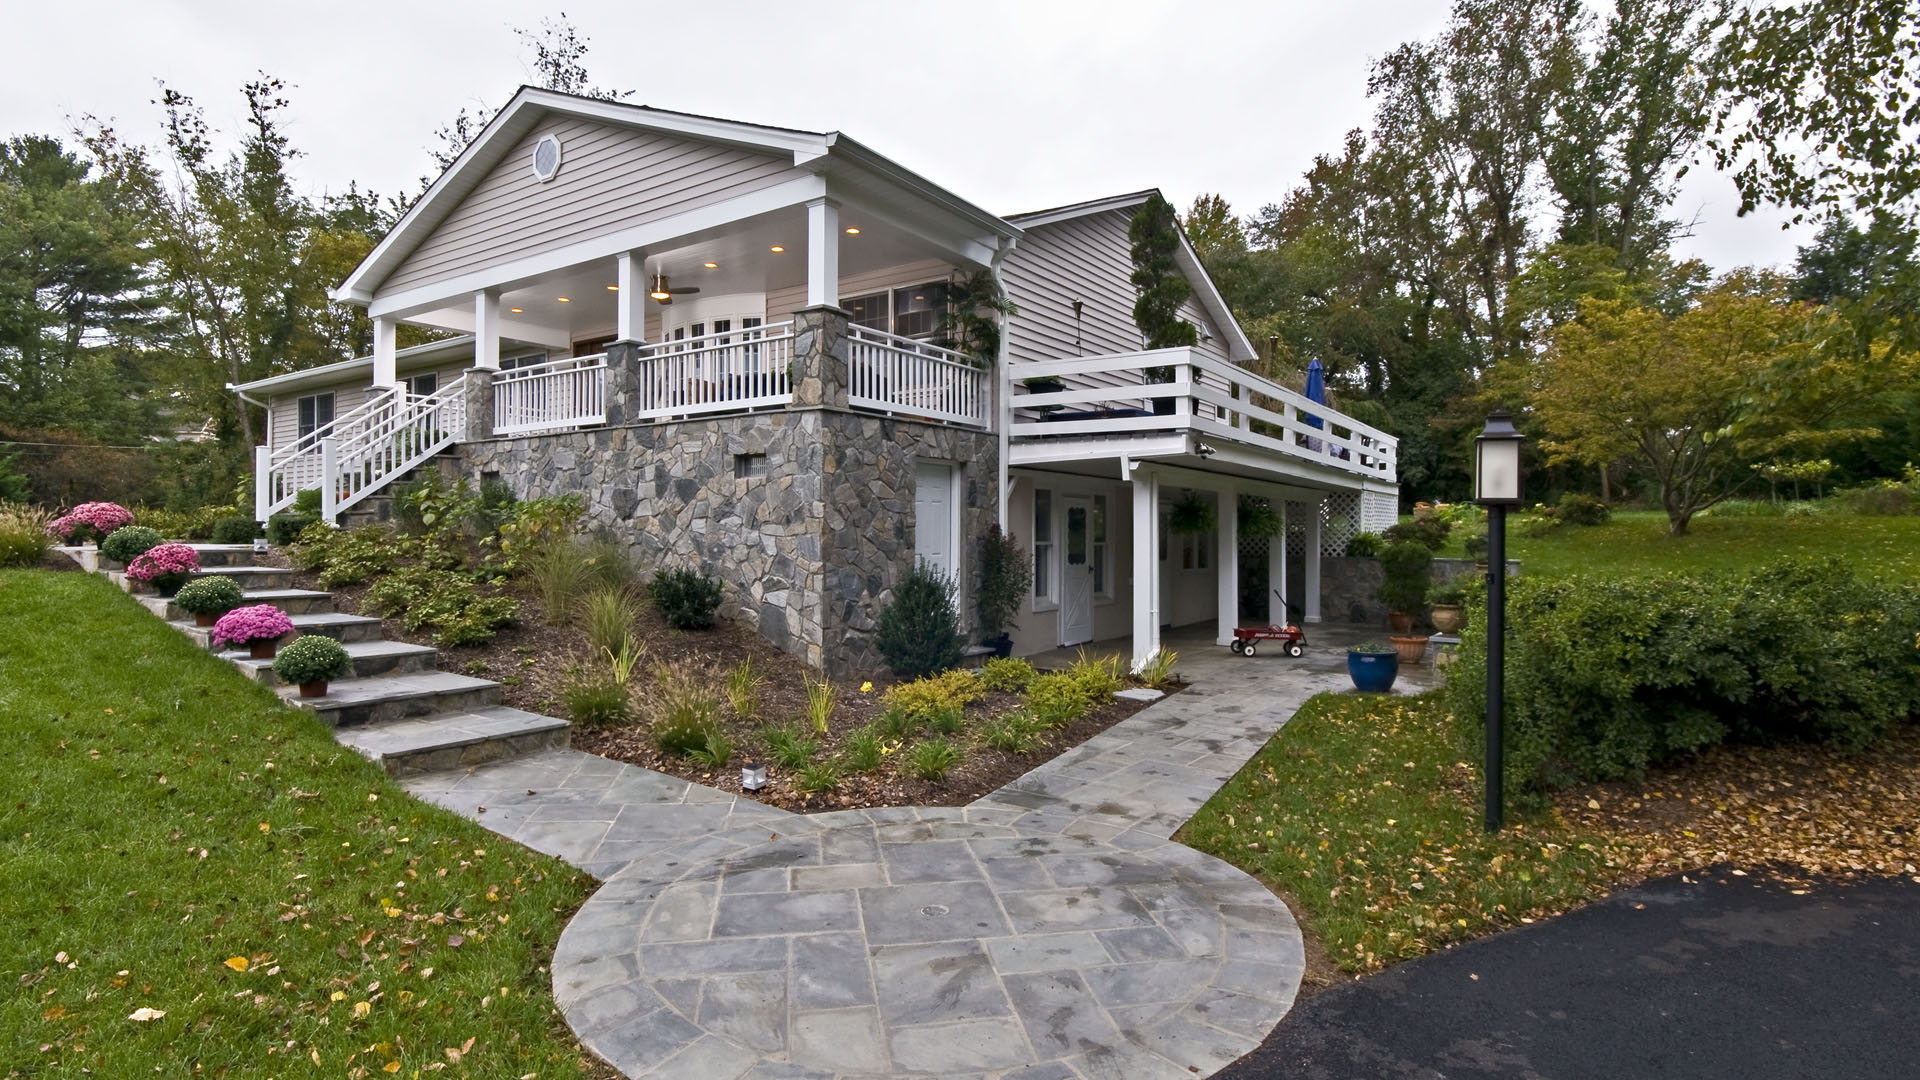 2012 Chrysalis Award National Winner, Residential Exterior Under $100,000